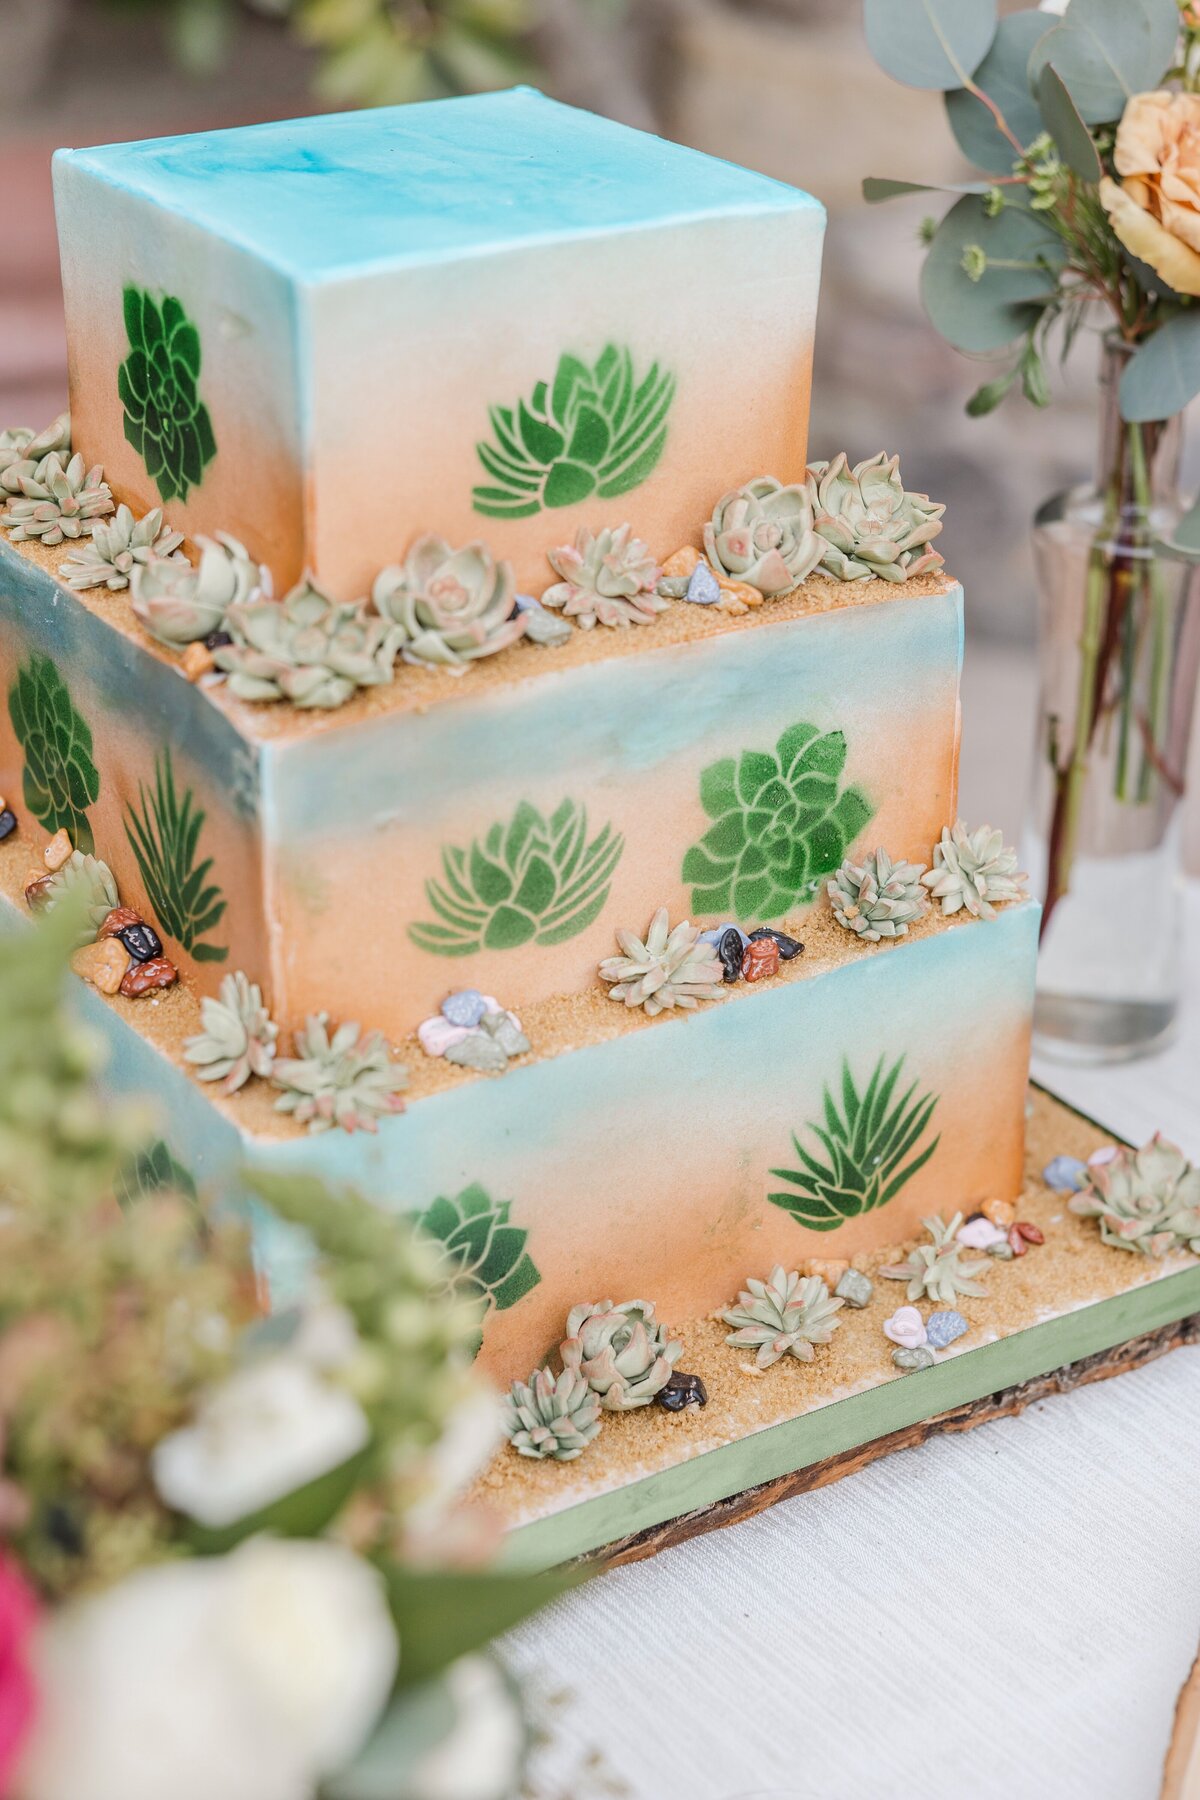 desert succulent wedding cake.jpg